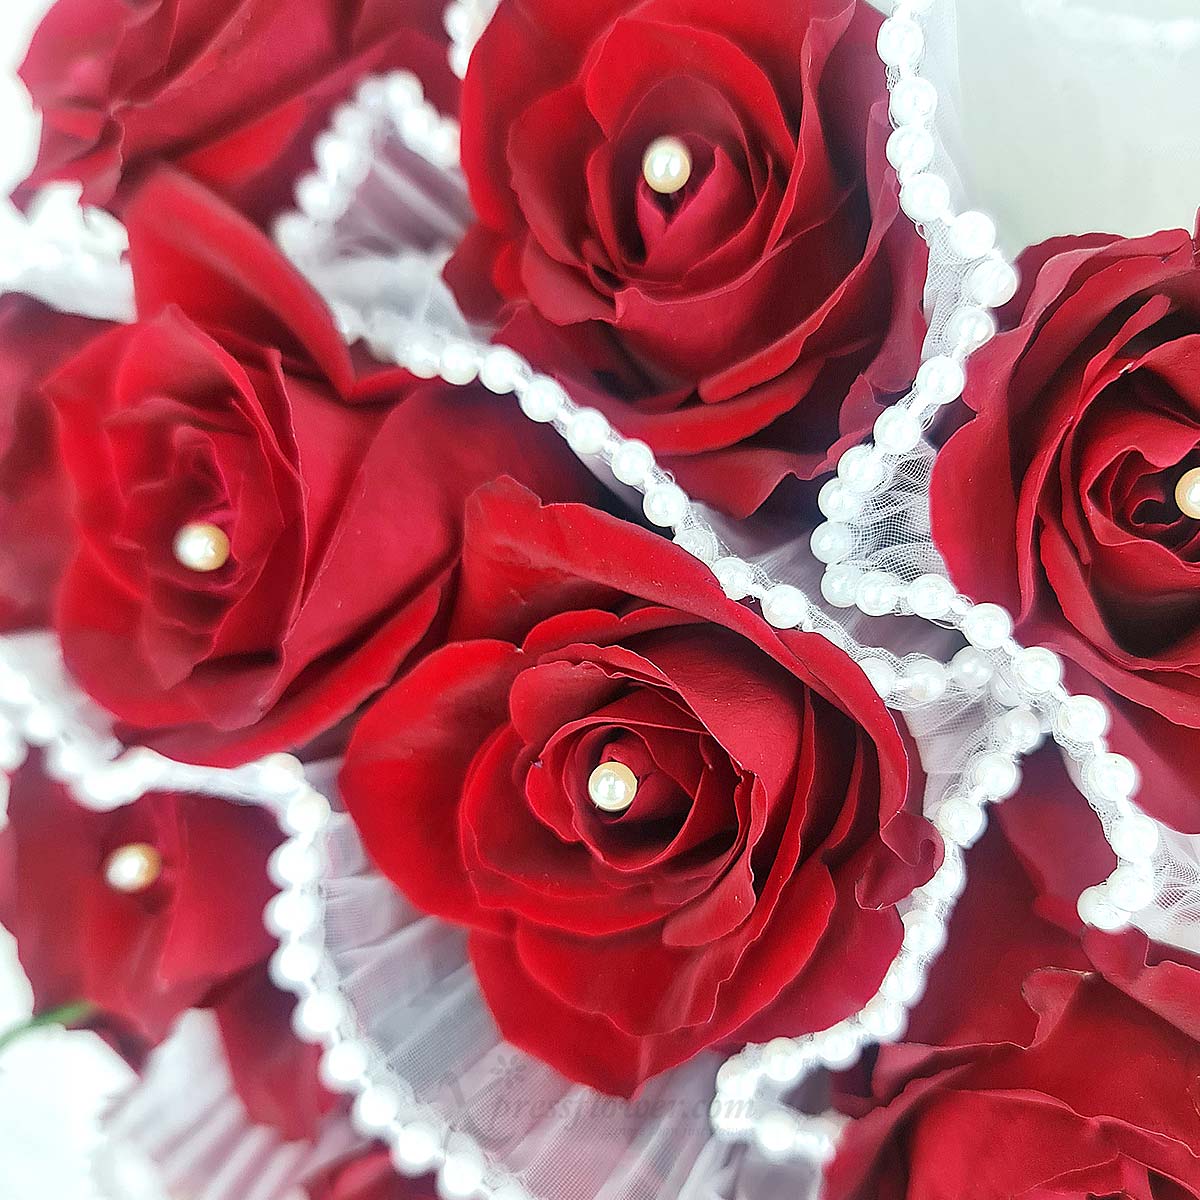 VDBQ2405_Heartfelt Blossom 12 Red Roses_1C